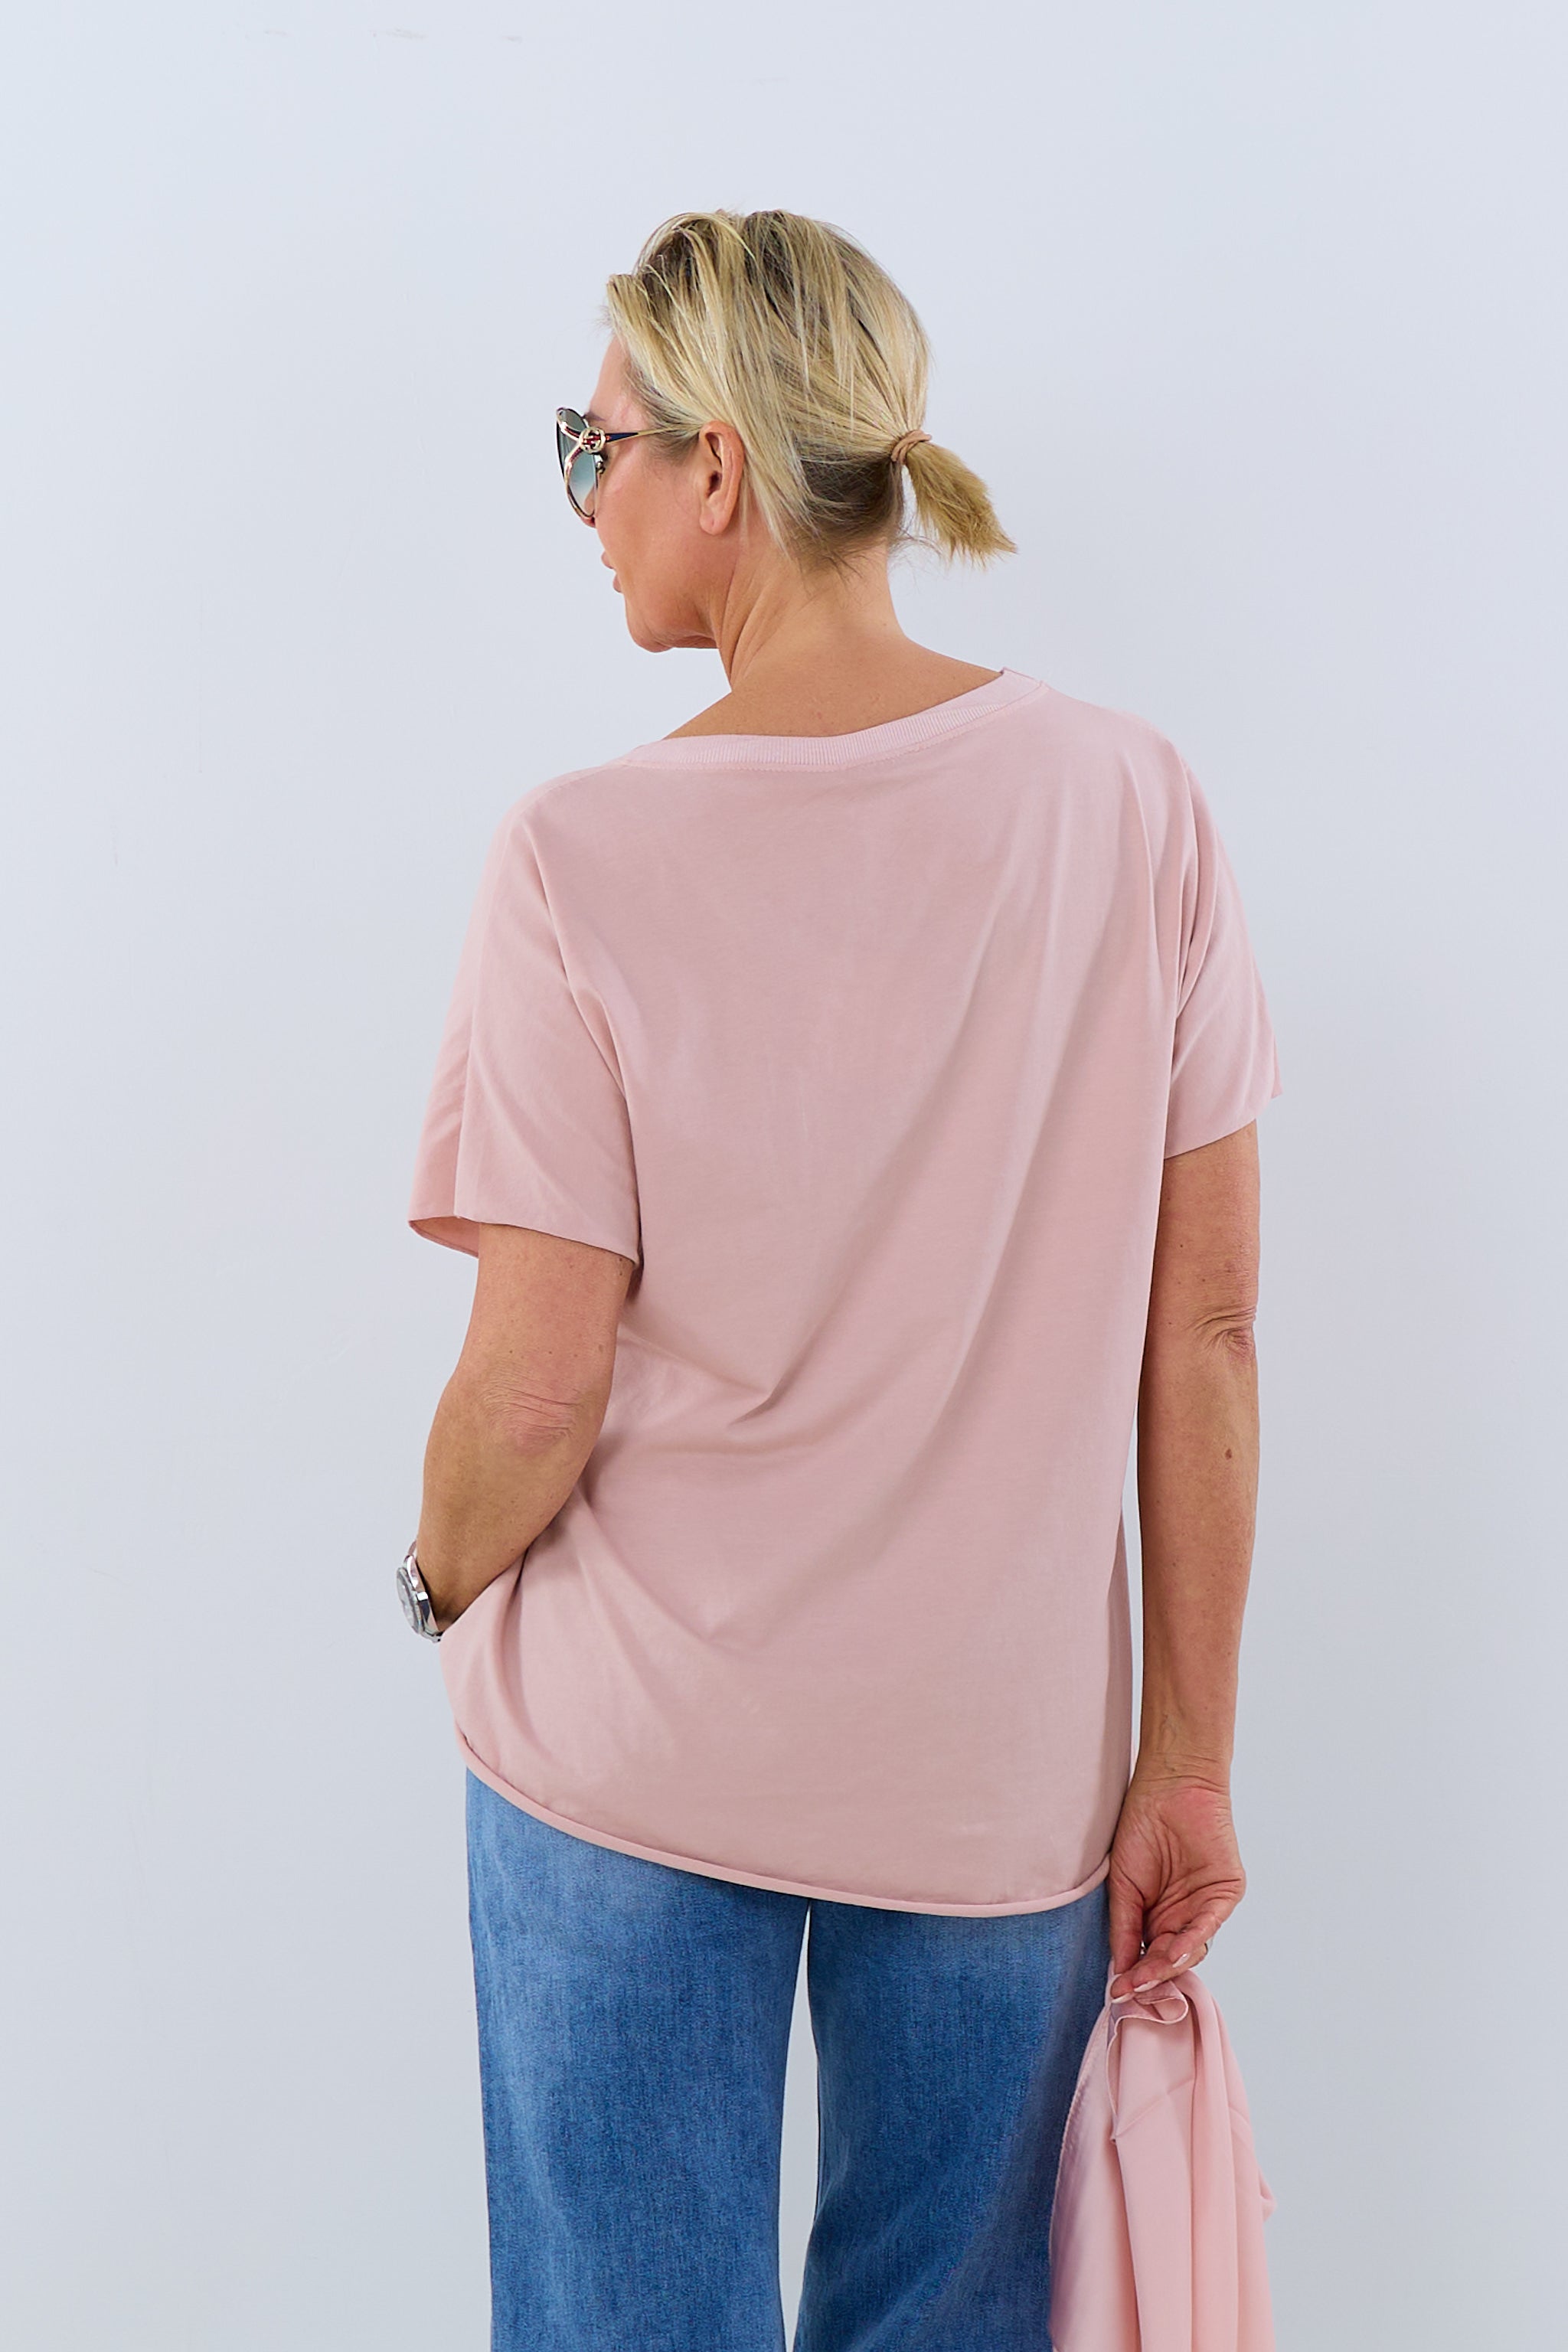 Damen T-Shirt Schriftzug Flock rosa TLD GmbH